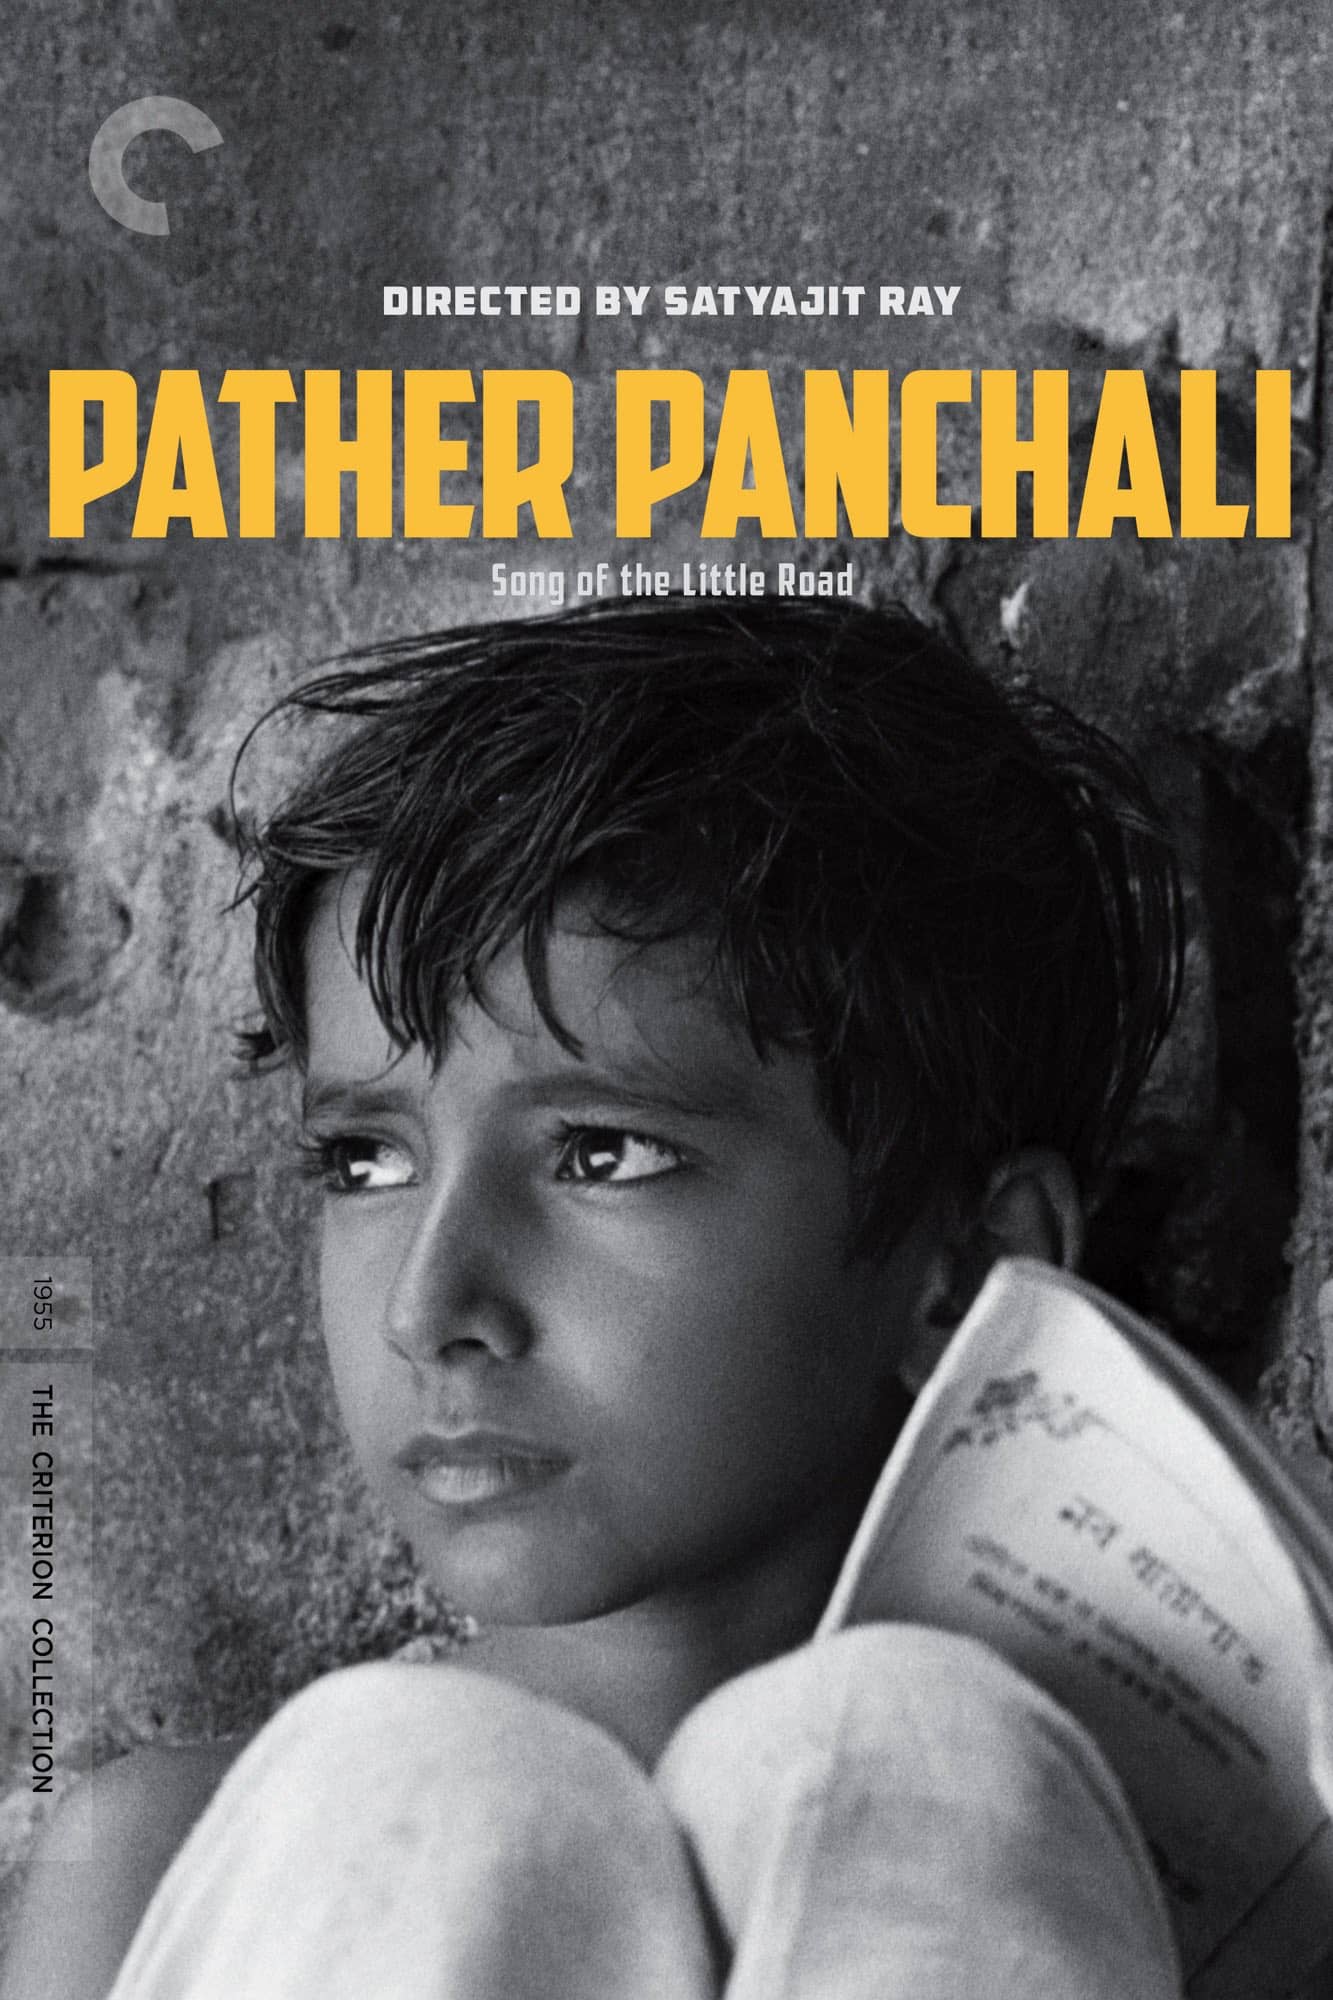 فیلم پدر پنچالی (Pather Panchali)